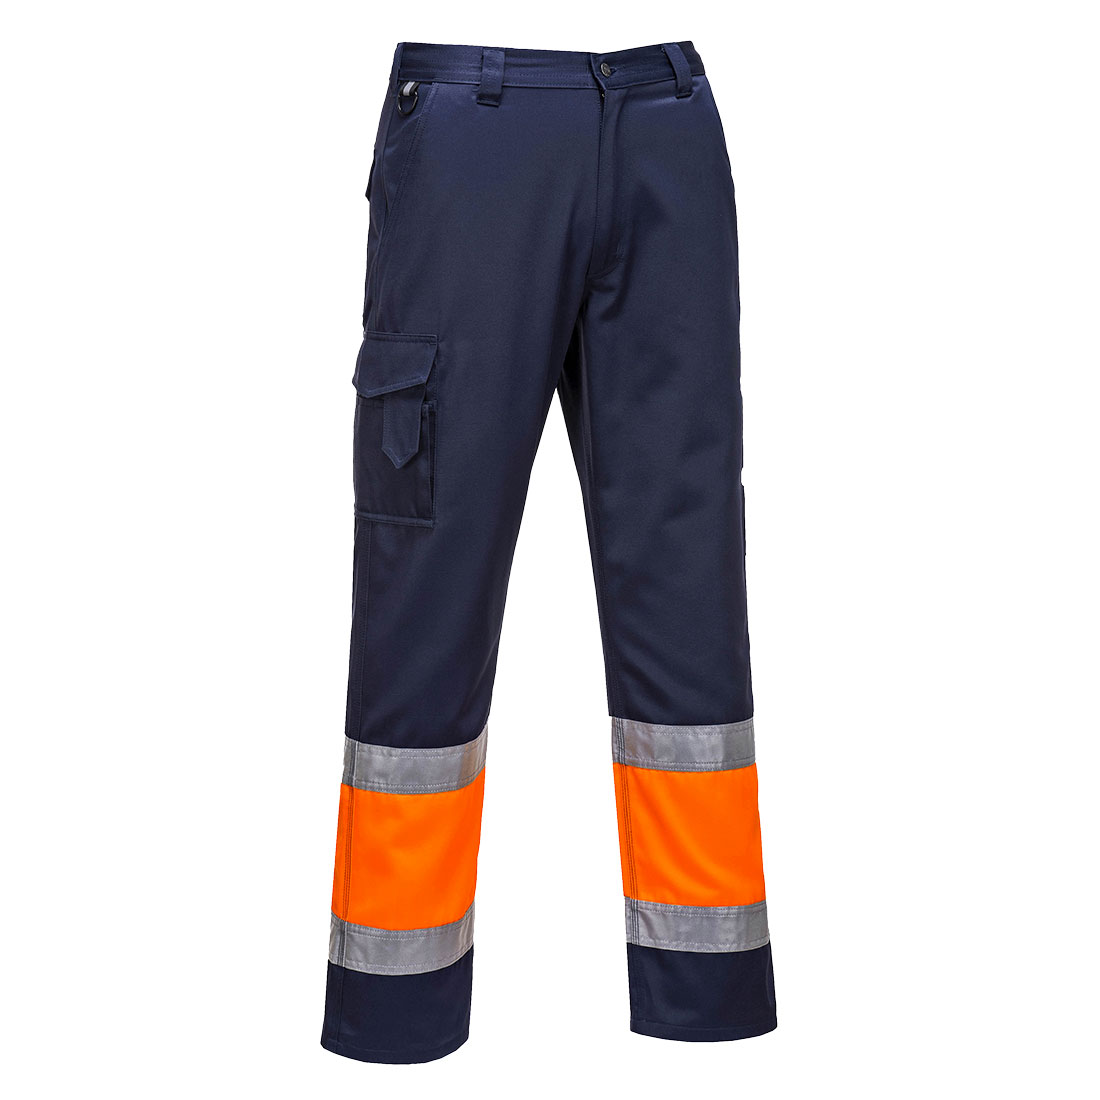 pantalon-azul-naranja-alta-visibilidad-con-cinta-reflectiva-E049-cental-de-suministrosgs.jpg